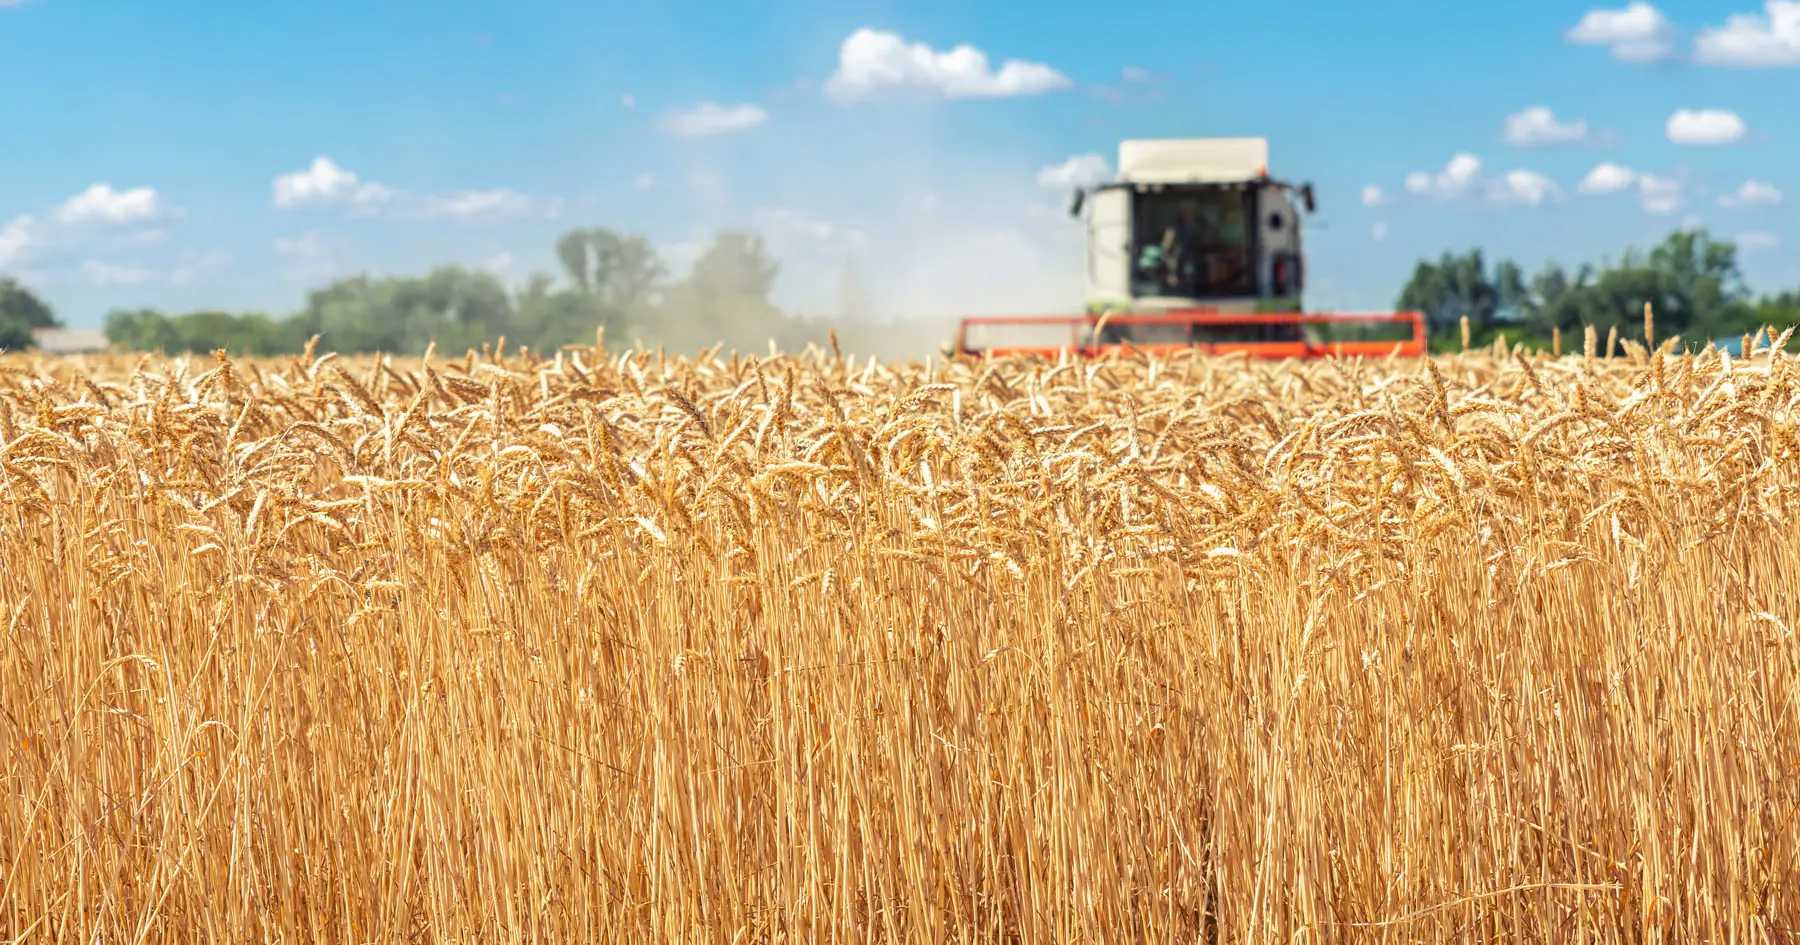 Bruxelas propõe derrogação temporária na PAC para aumentar a produção de cereais